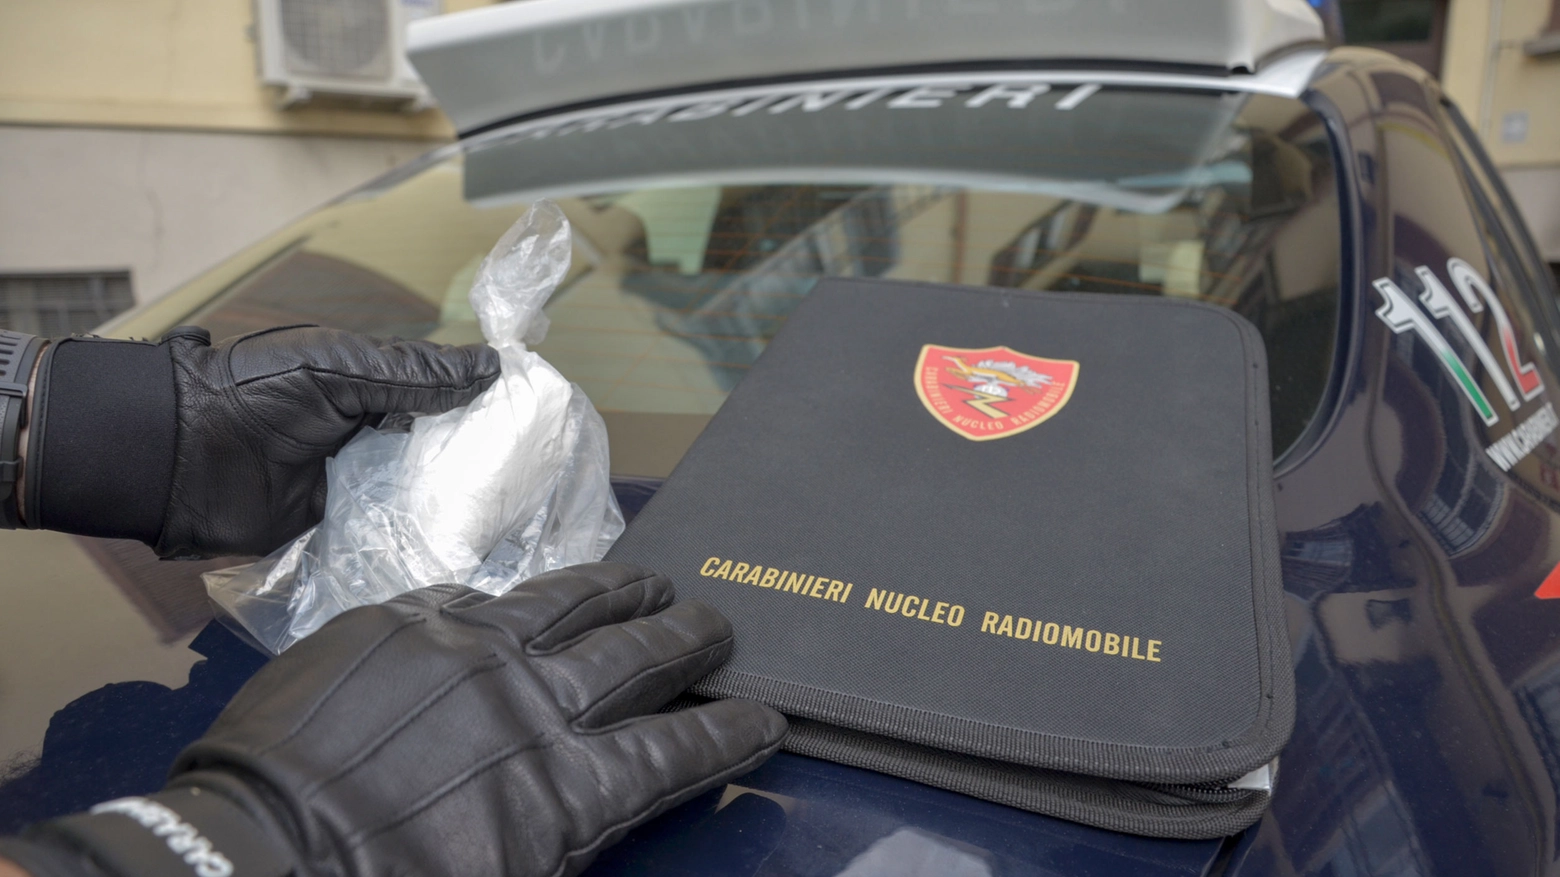 Sondrio, 100 grammi di cocaina in auto: arrestati una donna e due uomini